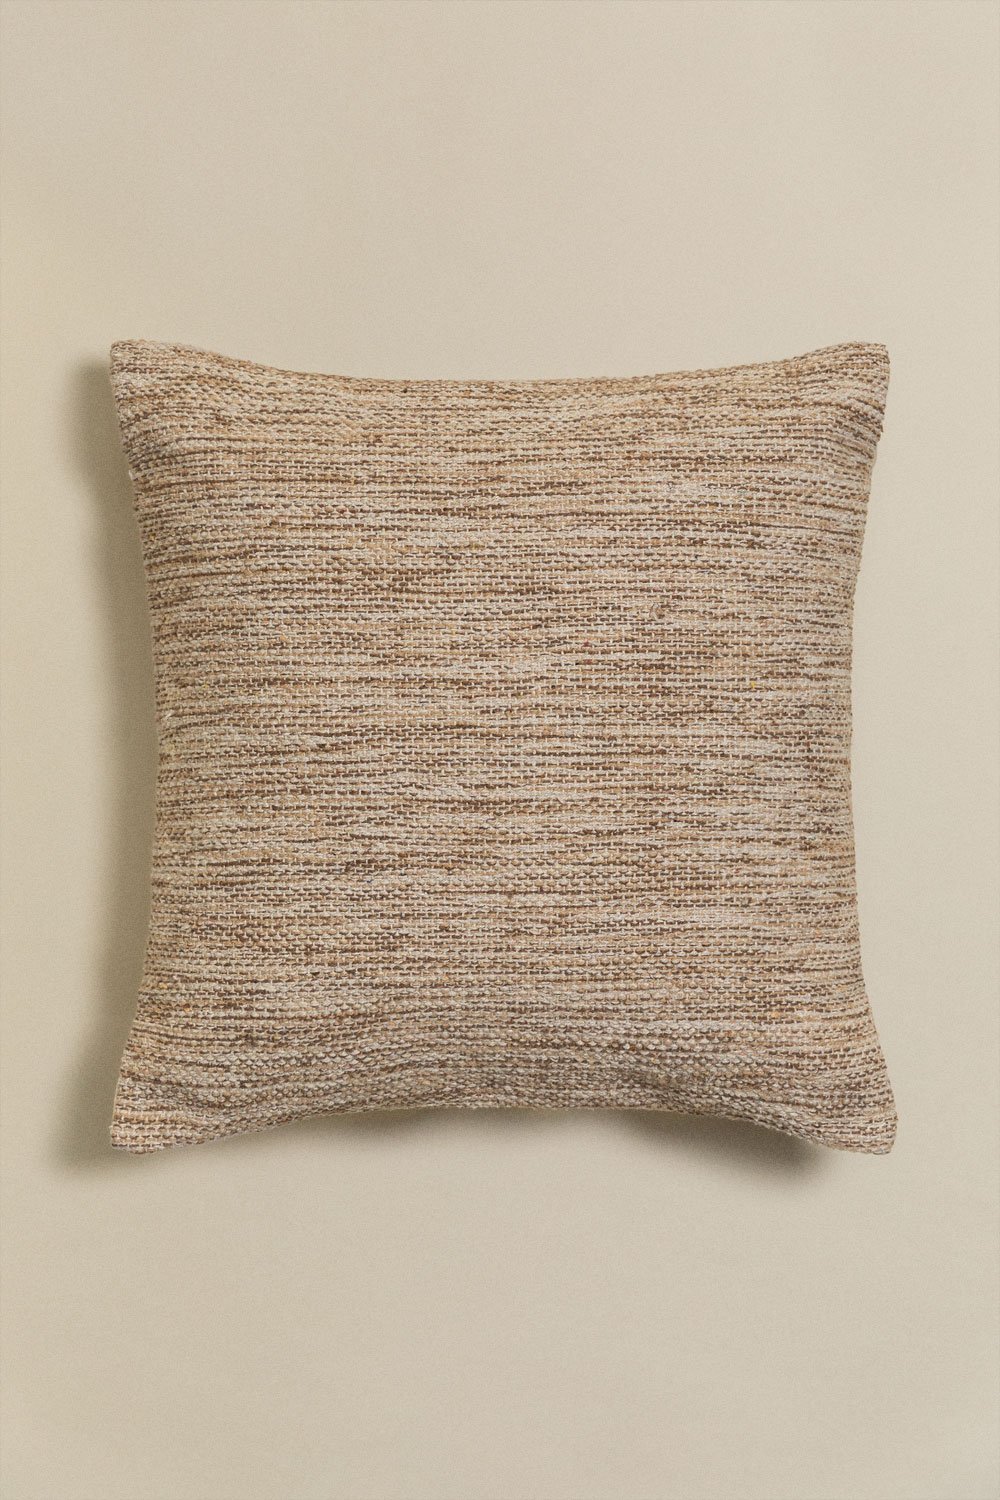 Kwadratowa poduszka bawełniana (45x45 cm) Mayniel, obrazek w galerii 1